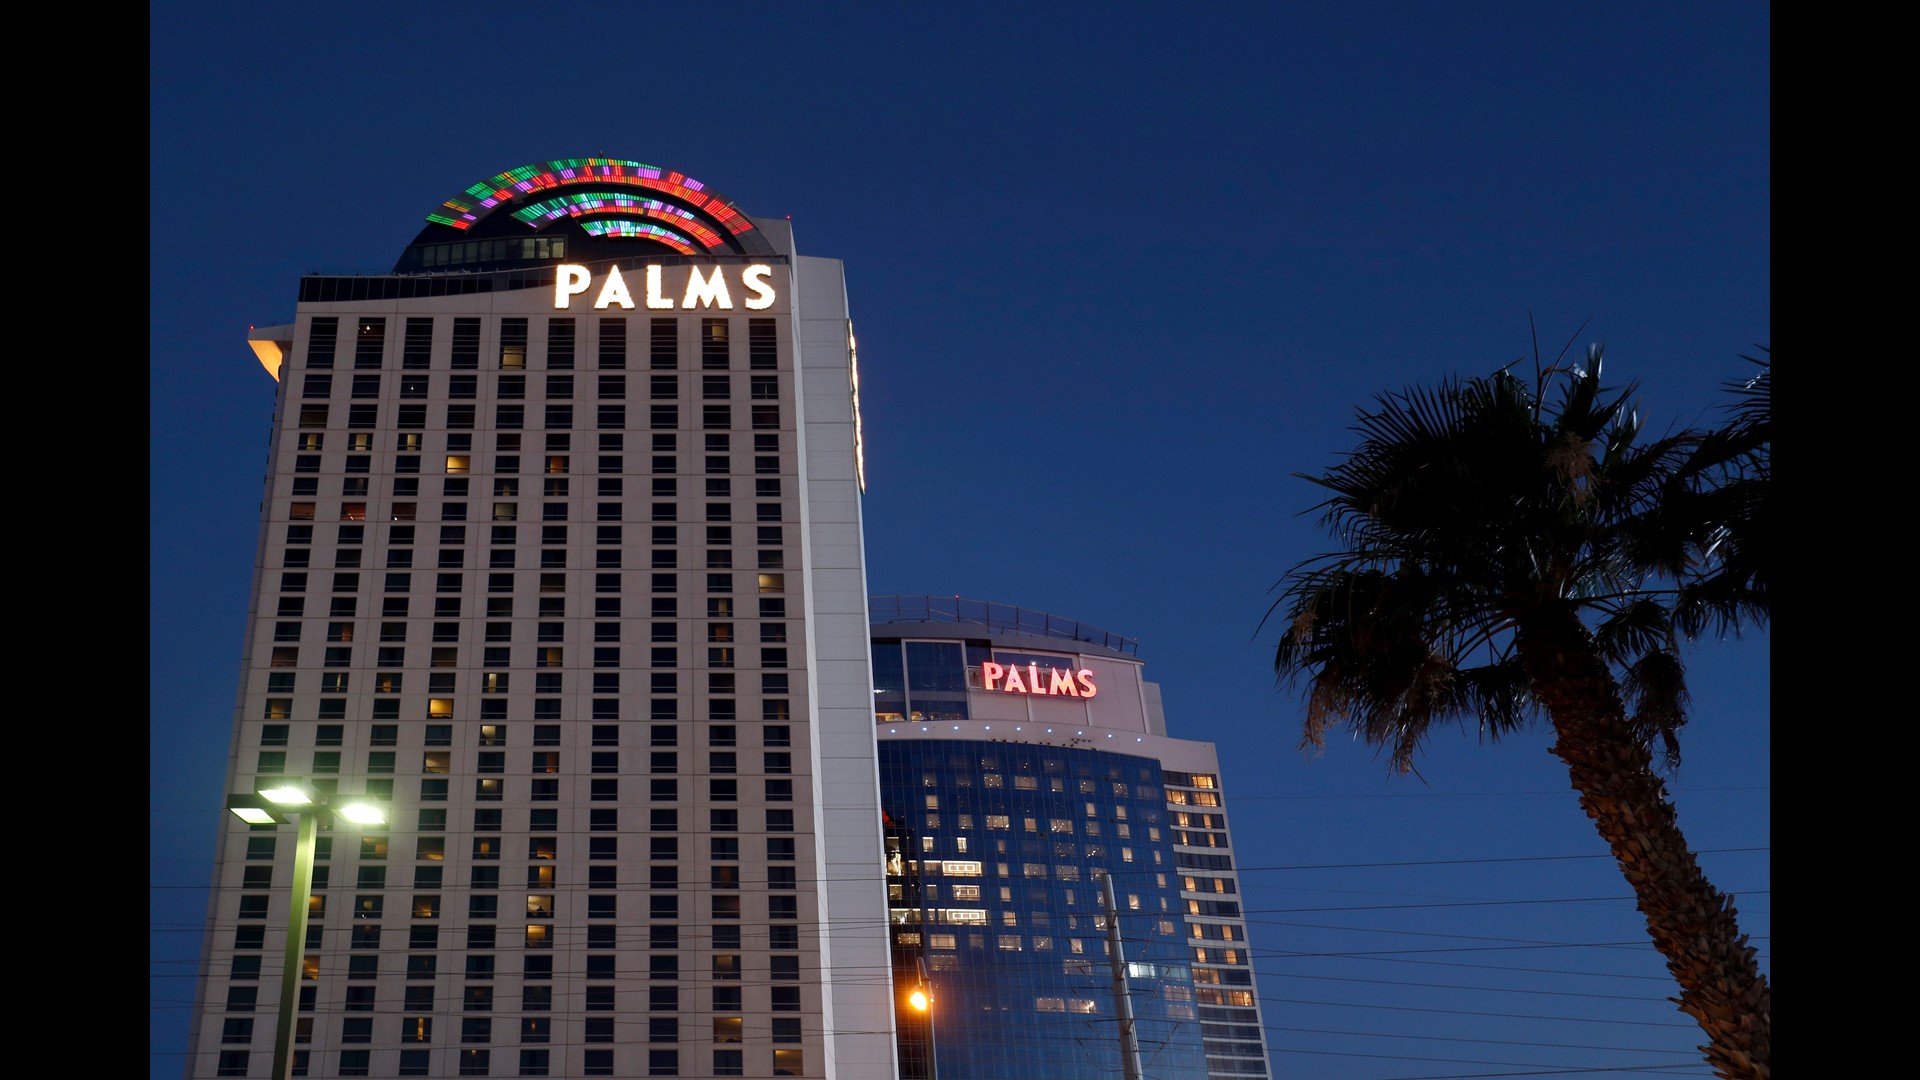 palms casino hotel las vegas